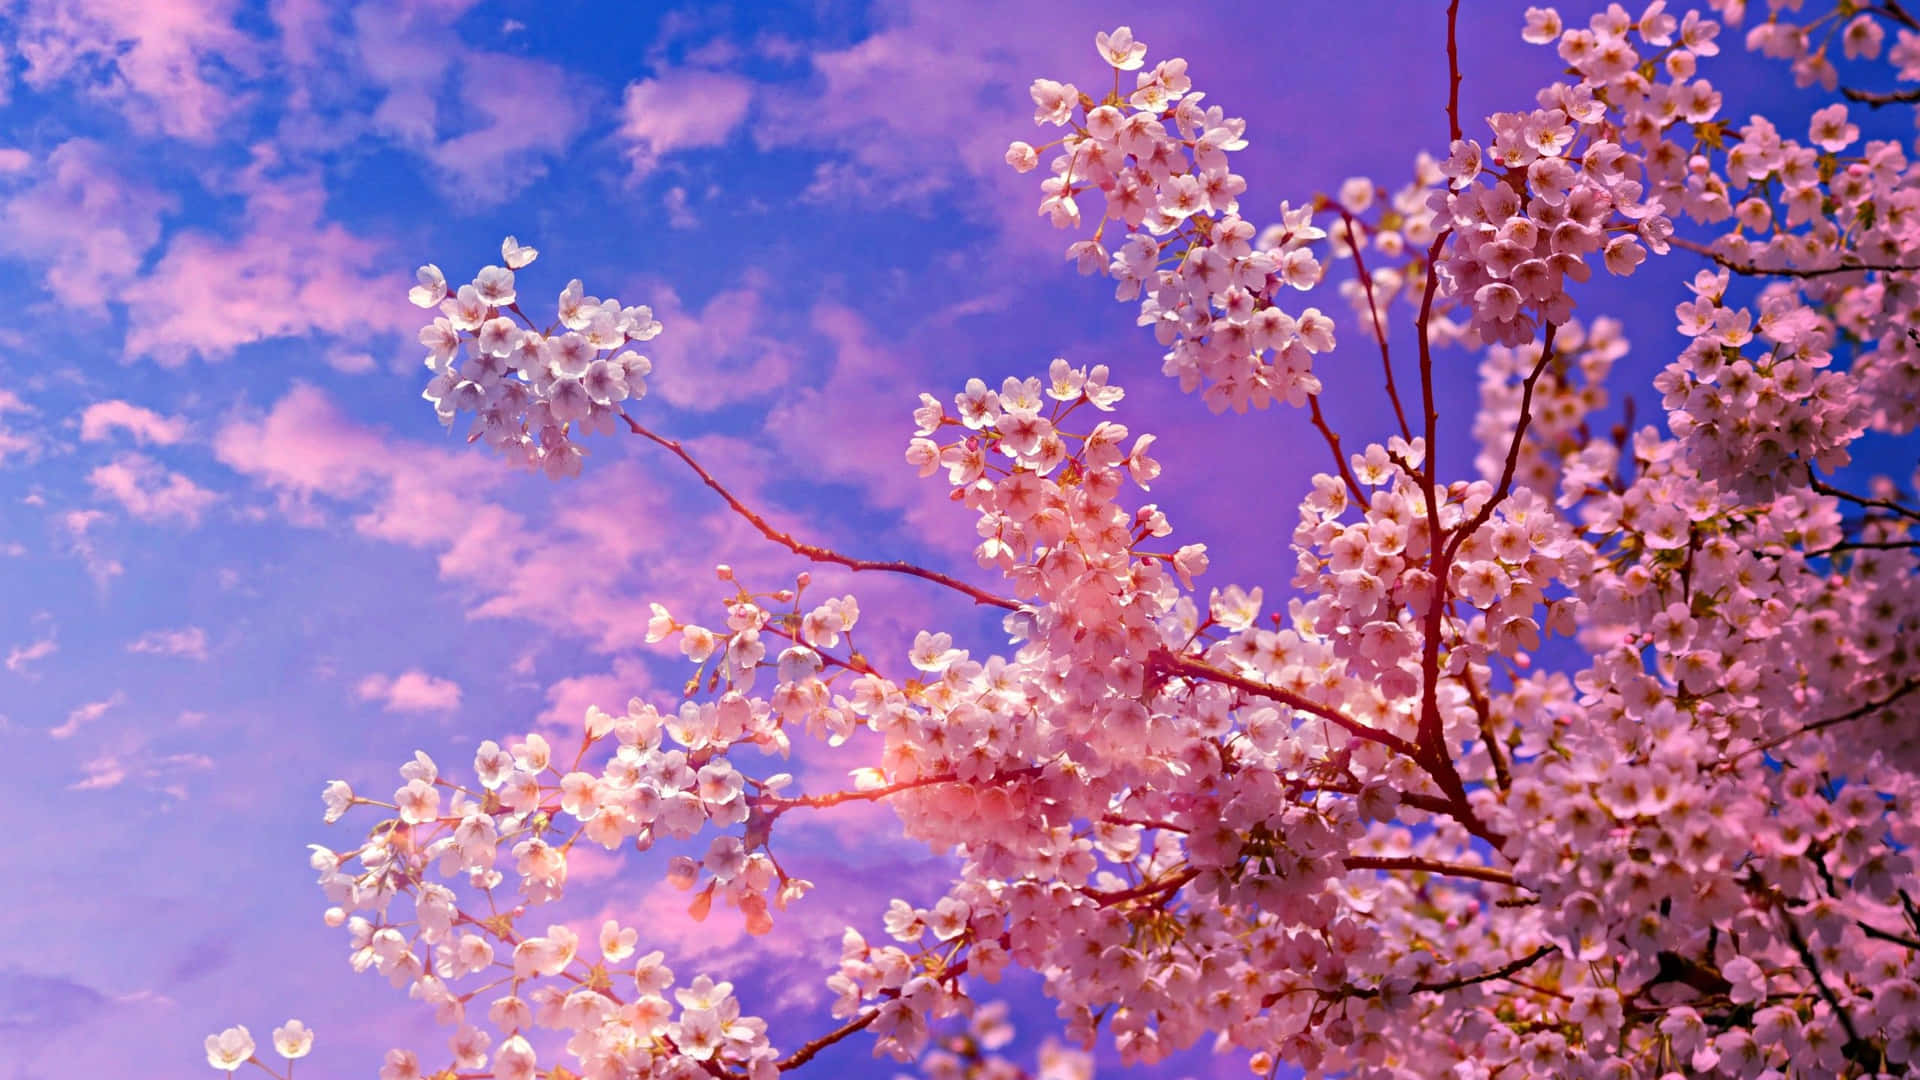 Enmålande Vy Av En Blommande Sakura-träd I Full Blom. Wallpaper